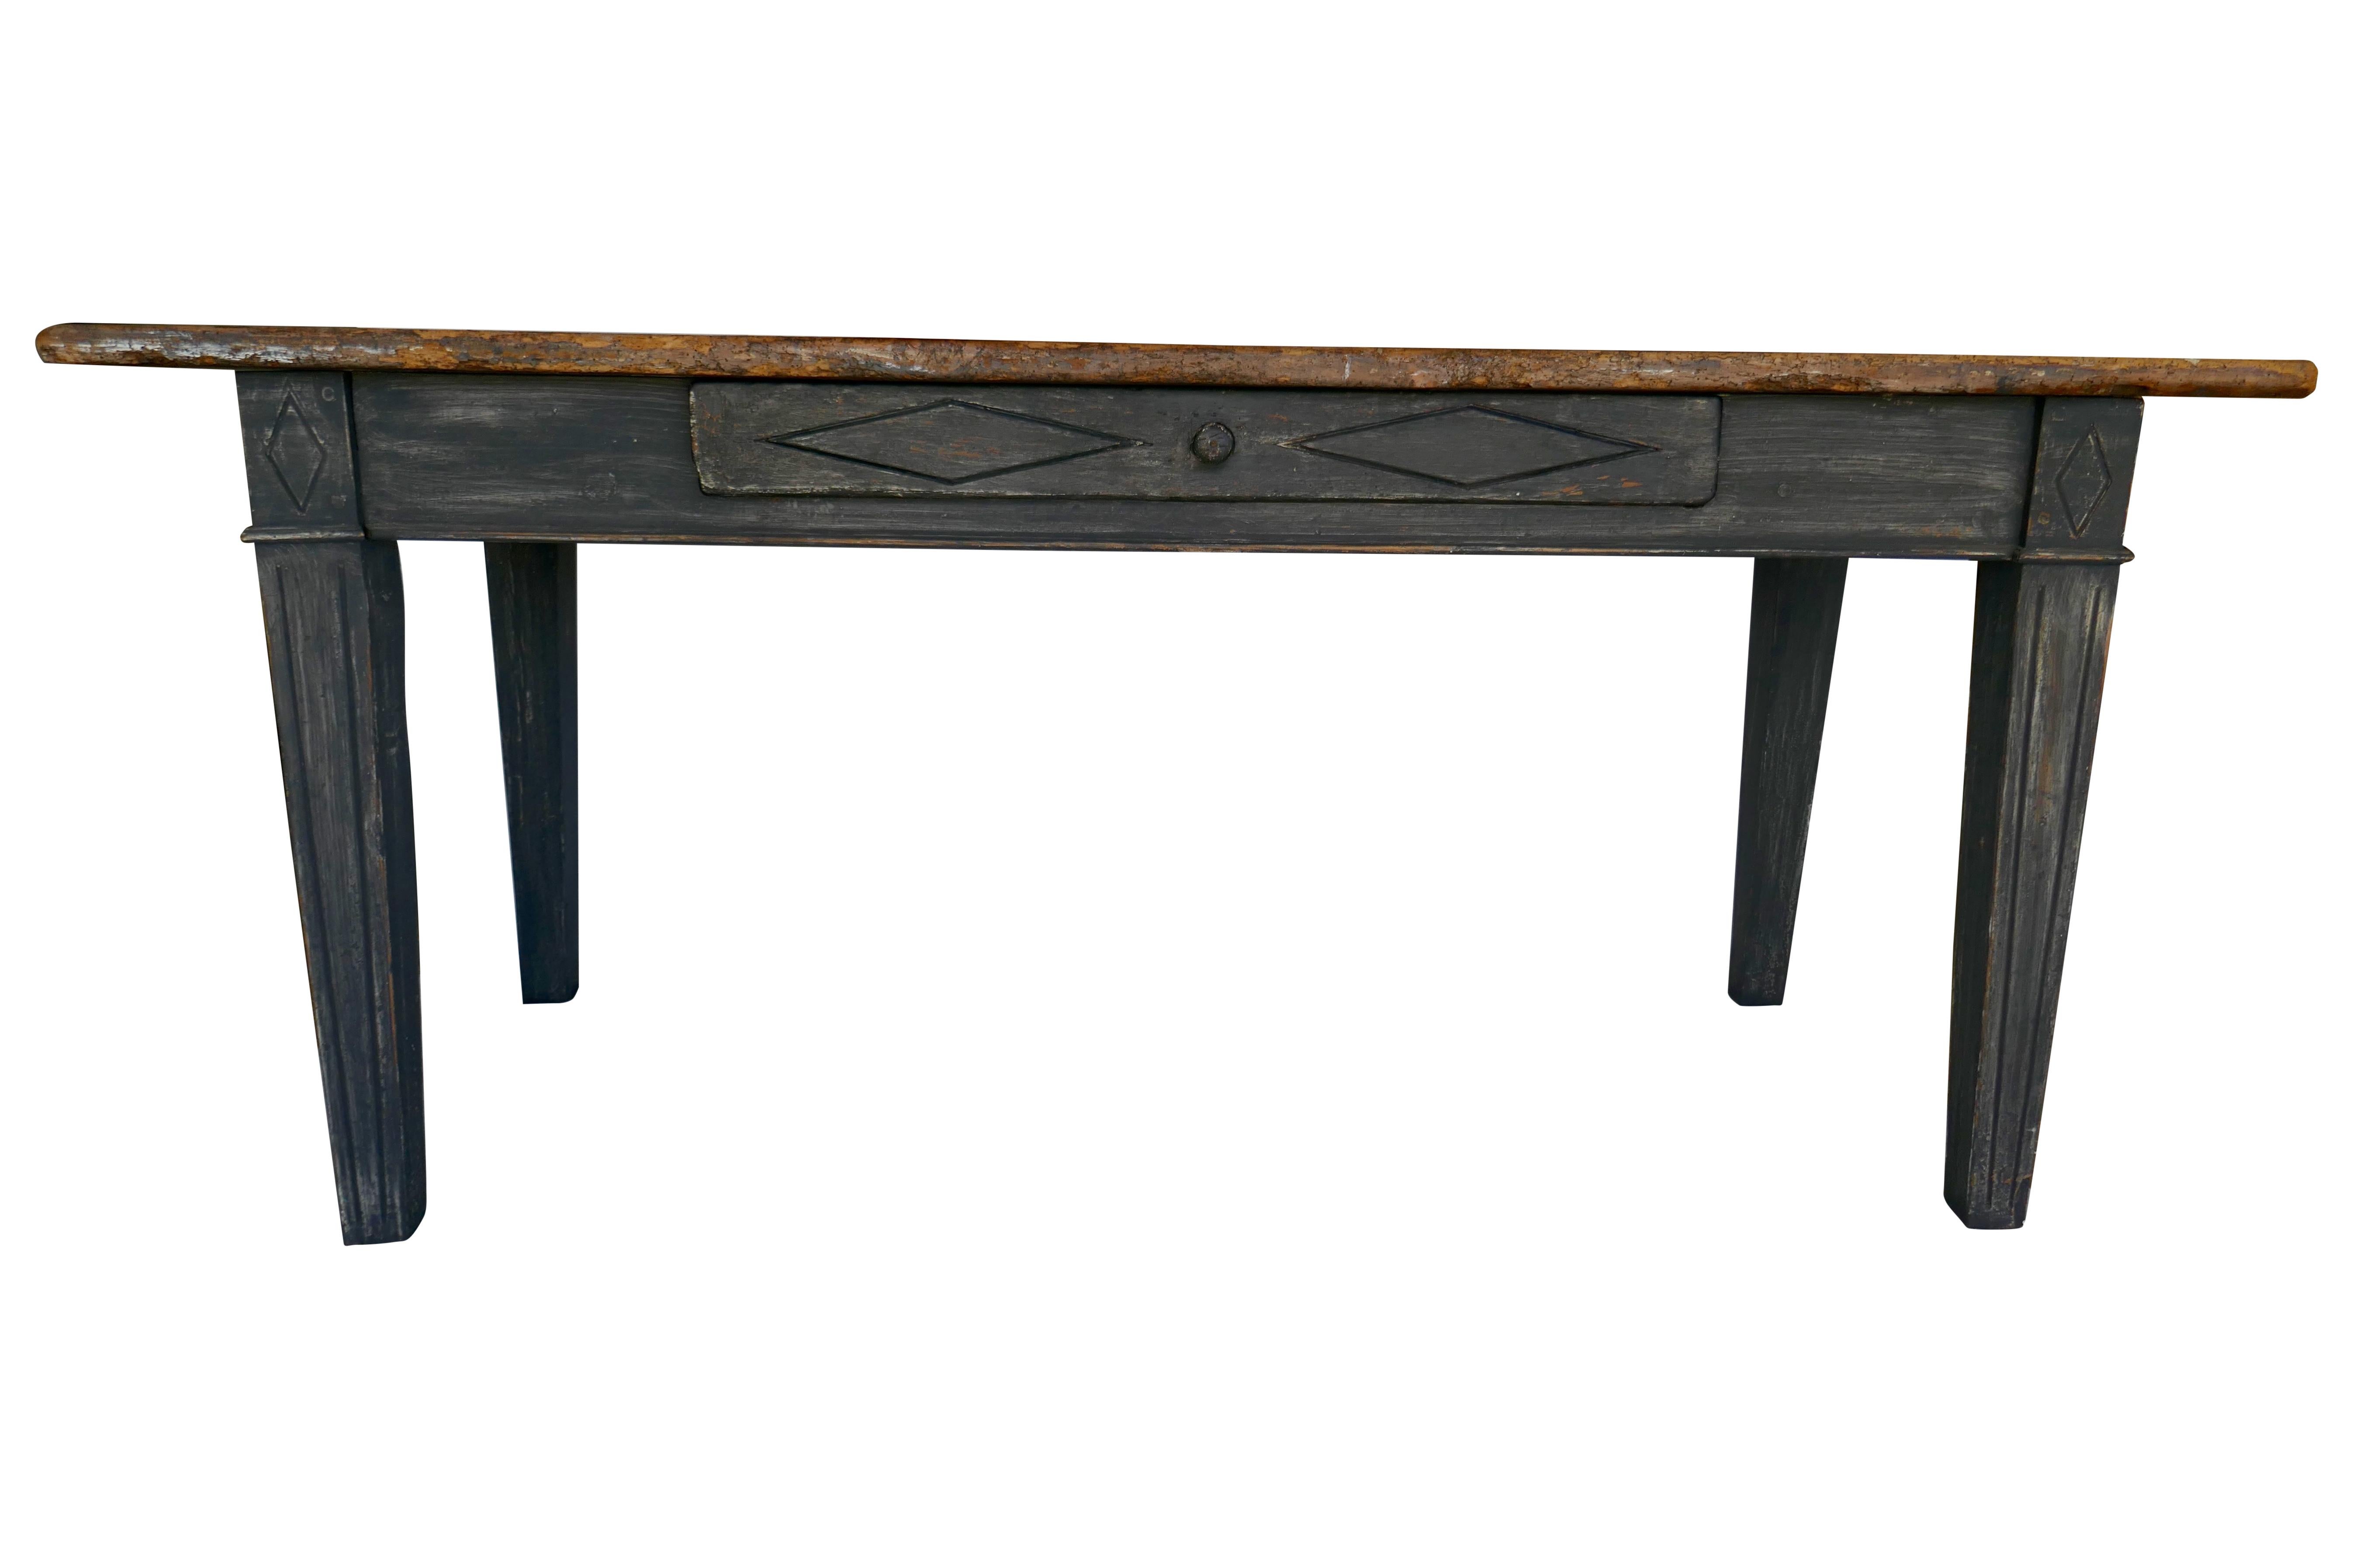 Dieser große antike, handgefertigte Massivholztisch aus Belgien ist ein beeindruckendes Möbelstück, das jedem Büro oder Arbeitszimmer einen Hauch von altem Charme verleiht. Der aus massivem Hartholz geschnitzte und gefertigte Schreibtisch weist eine